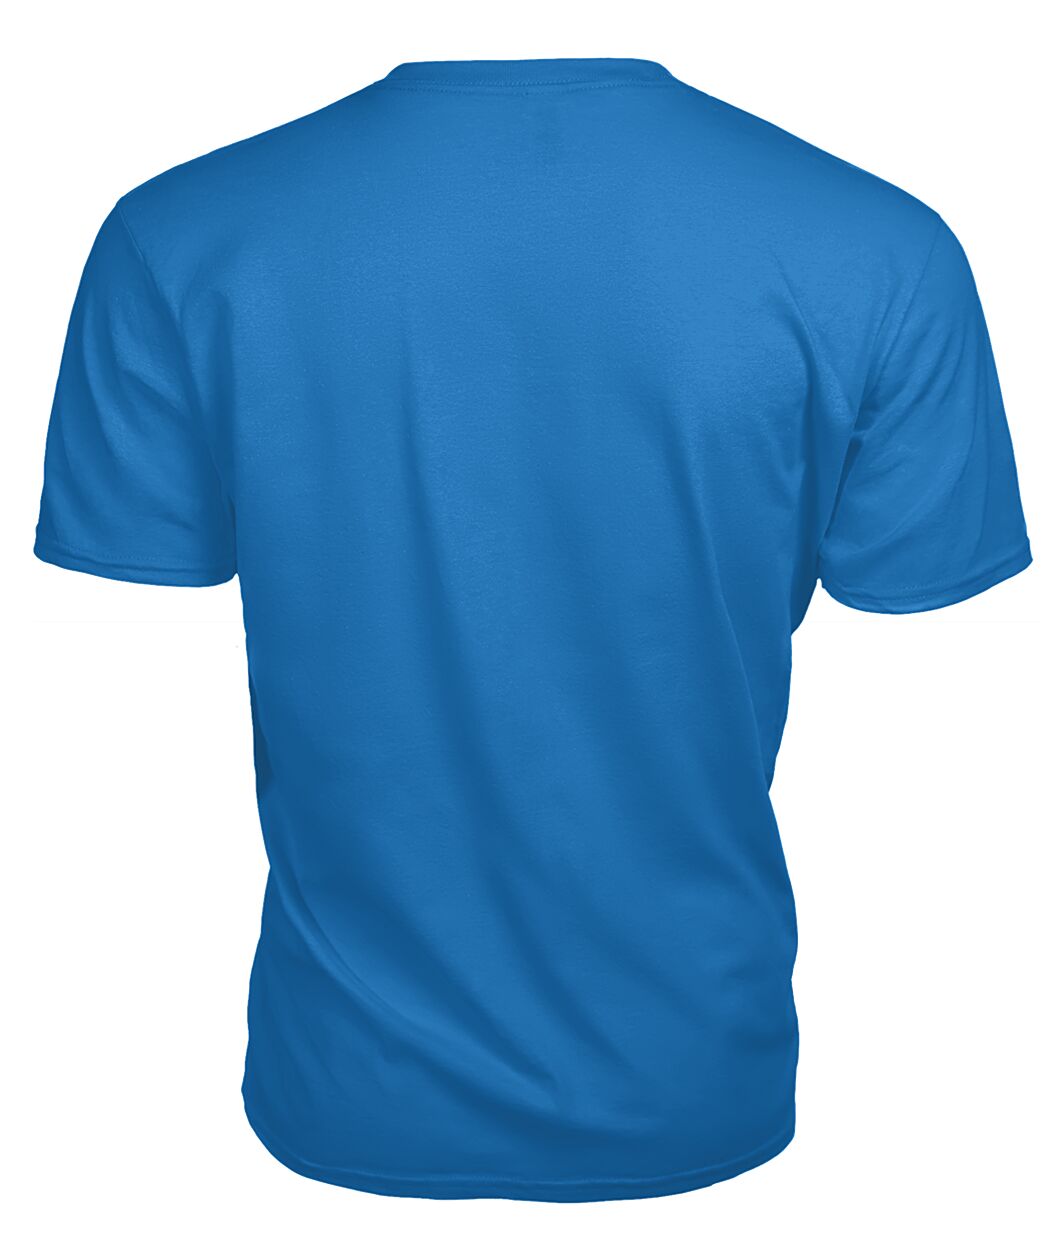 Connelly Family Tartan - 2D T-shirt